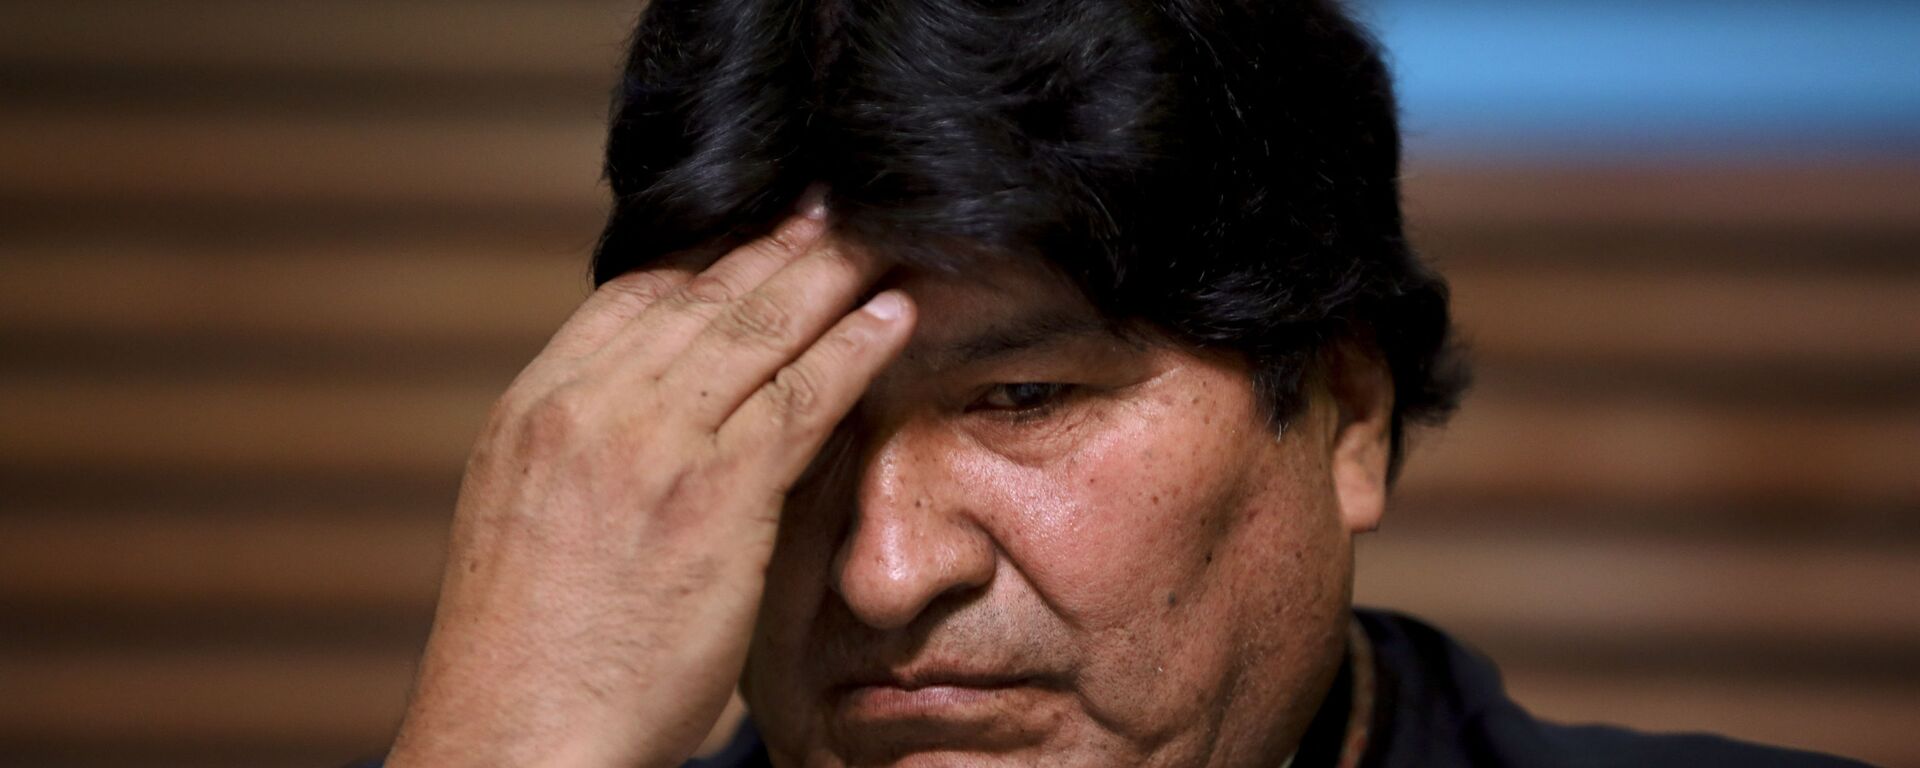 Evo Morales, expresidente de Bolivia - Sputnik Mundo, 1920, 14.12.2021